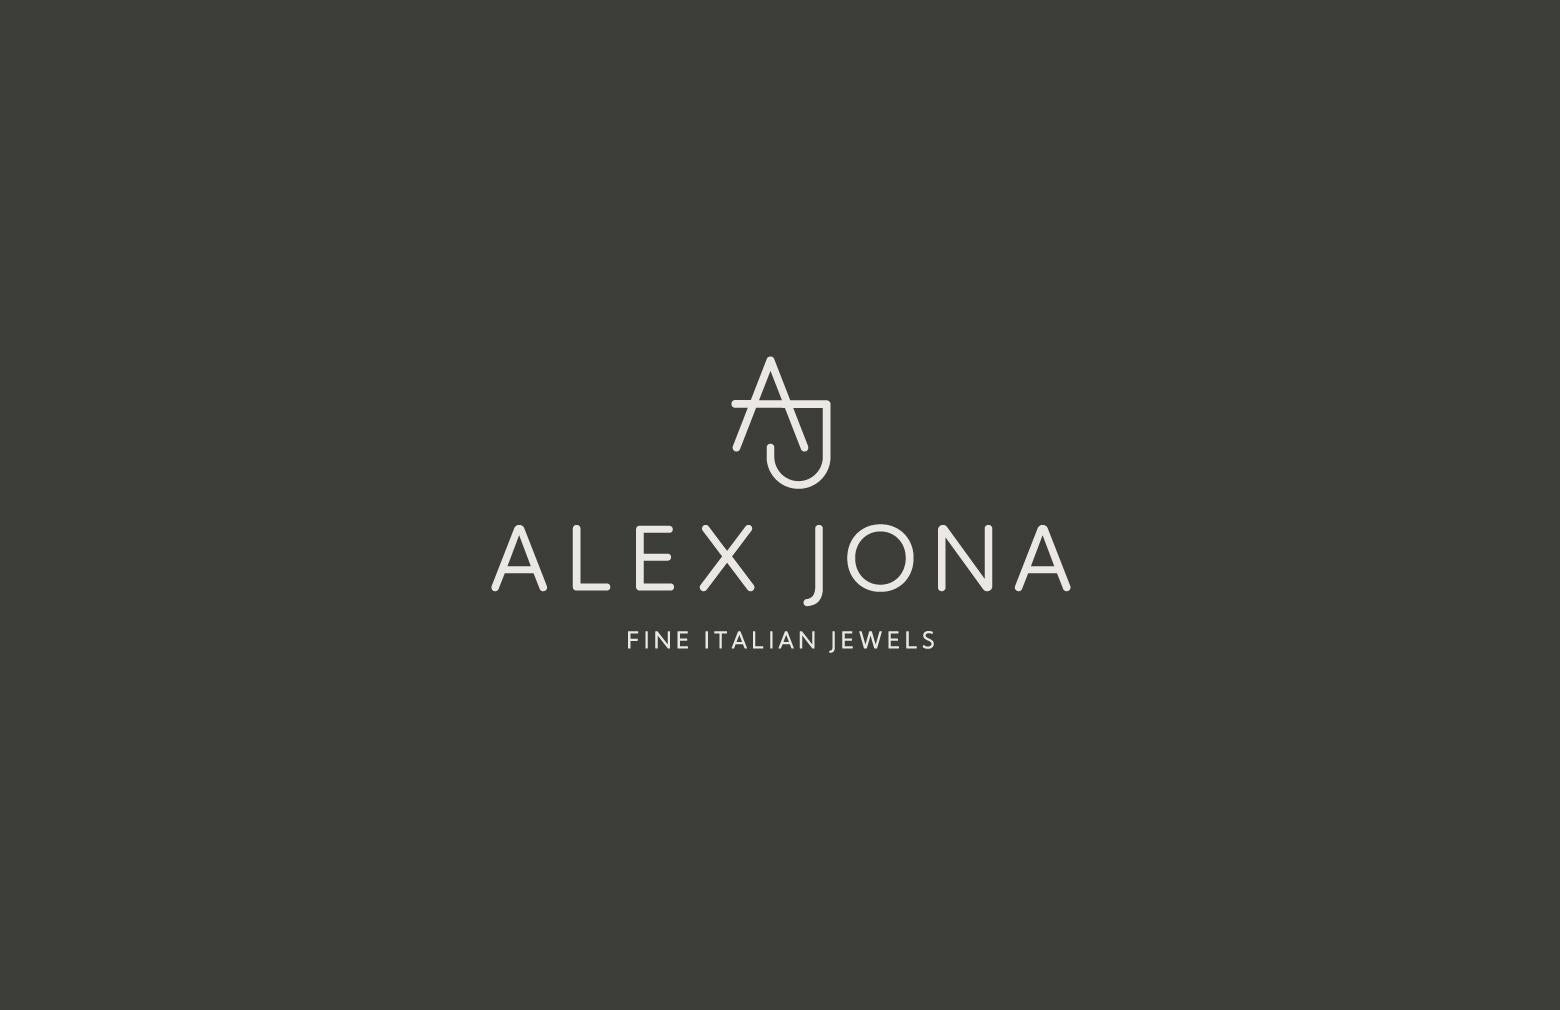 Alex Jona Floating Black Diamond 18 Karat White Gold Earrings For Sale 6